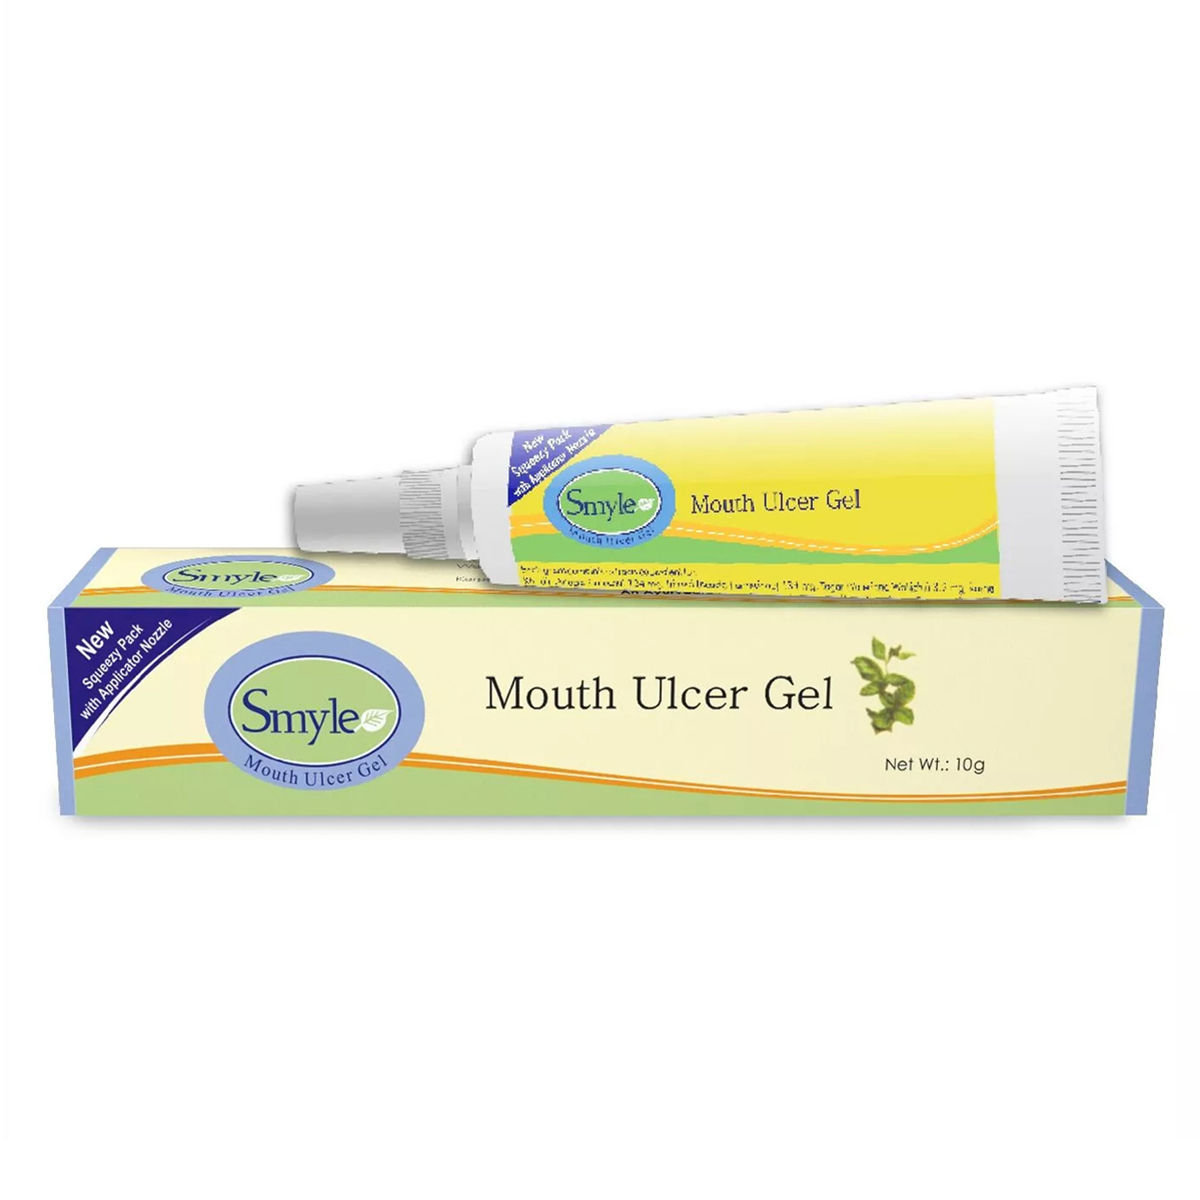 Buy Smyle Mouth Ulcer Gel, 10 gm Online